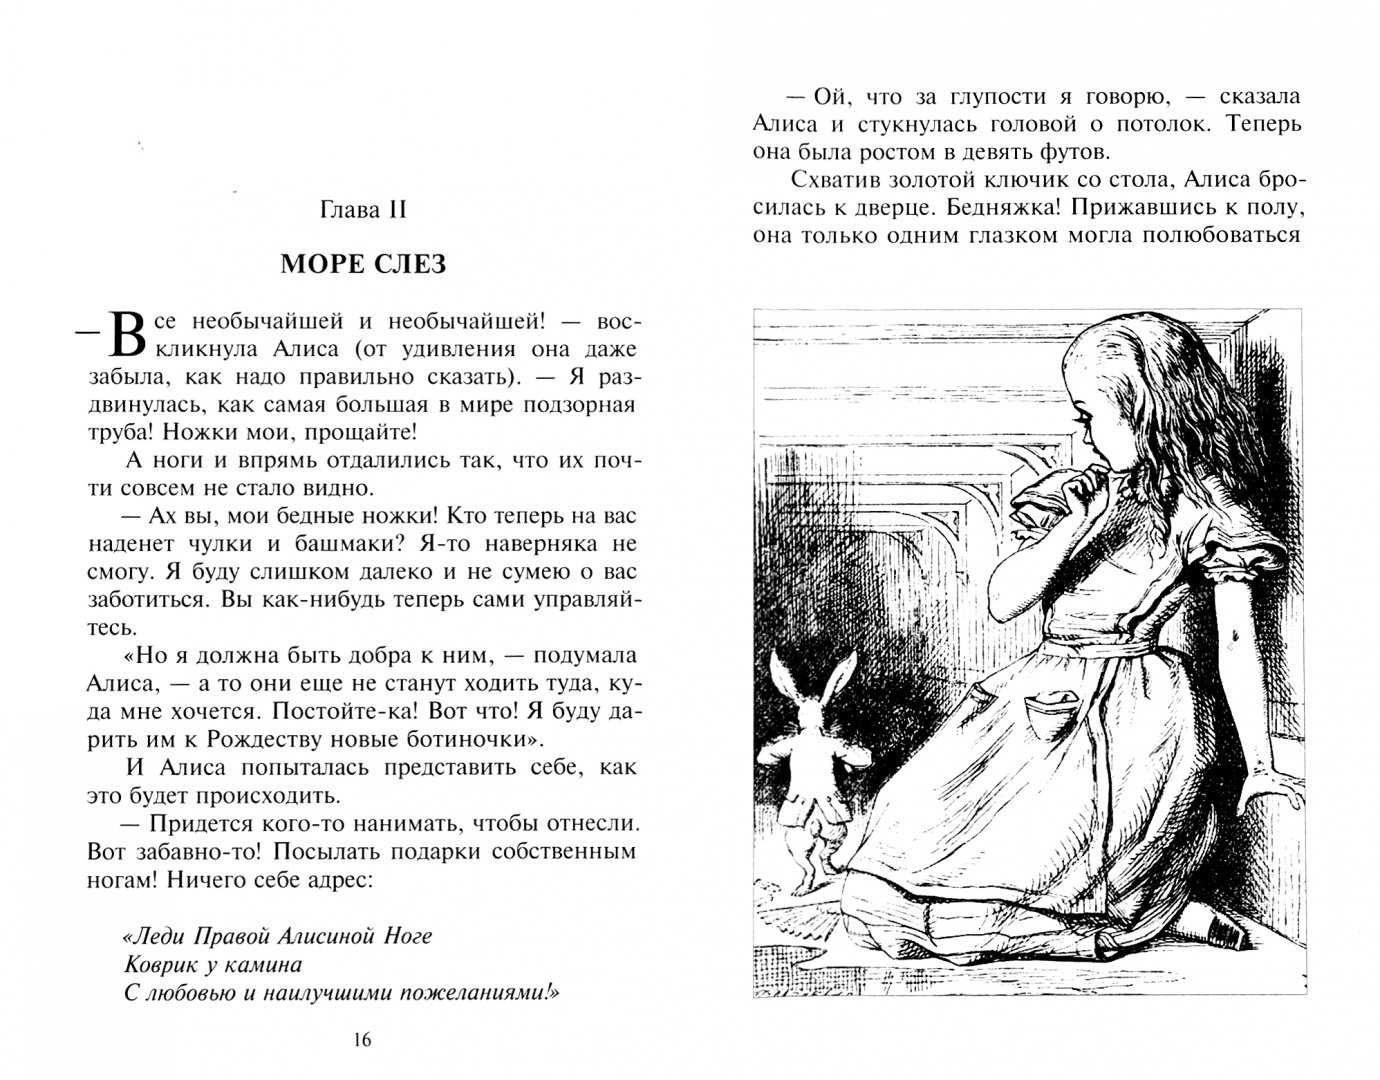 Раскраски Алиса в стране чудес - это иллюстрации к одноименной сказке Раскраски Алиса в стране чудес пользуются большой популярностью как среди детей, так и среди старшего поколения